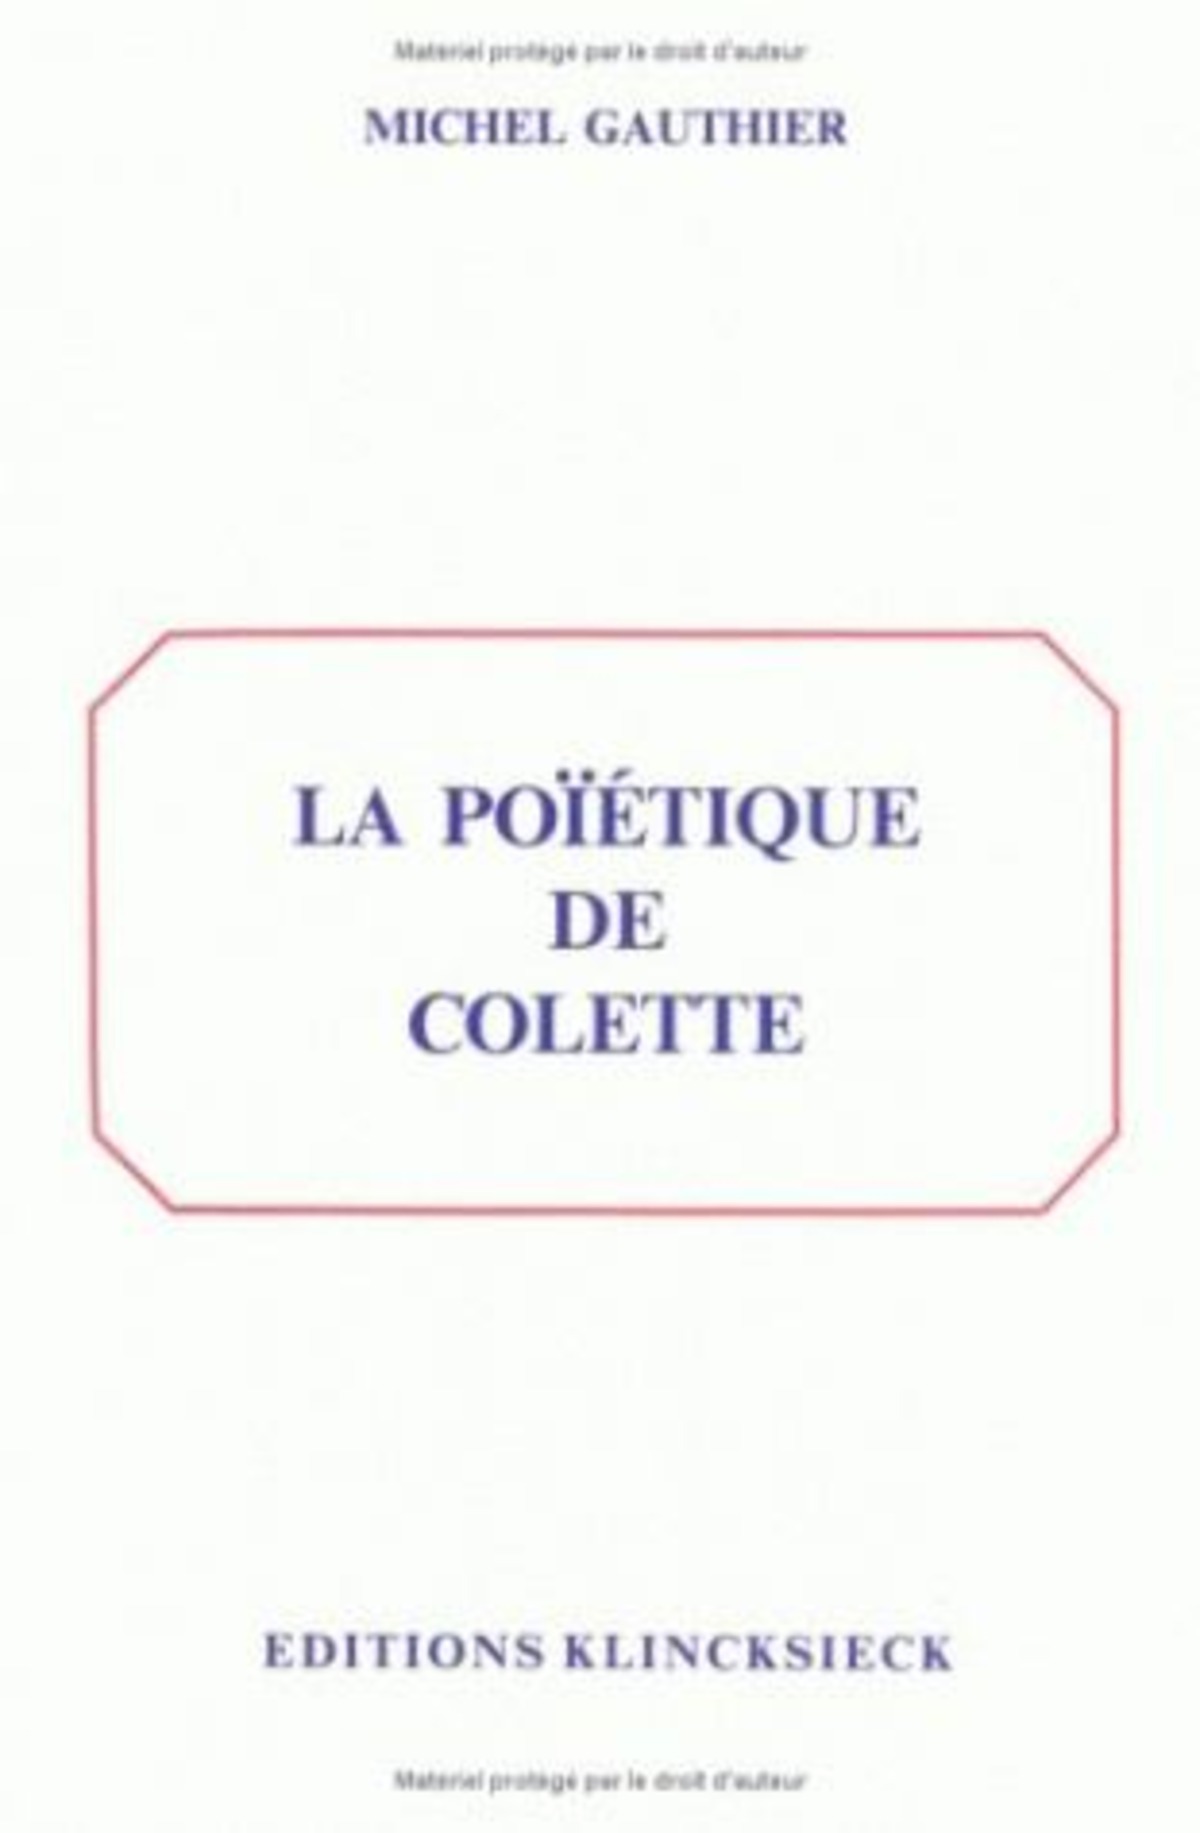 La Poïétique de Colette